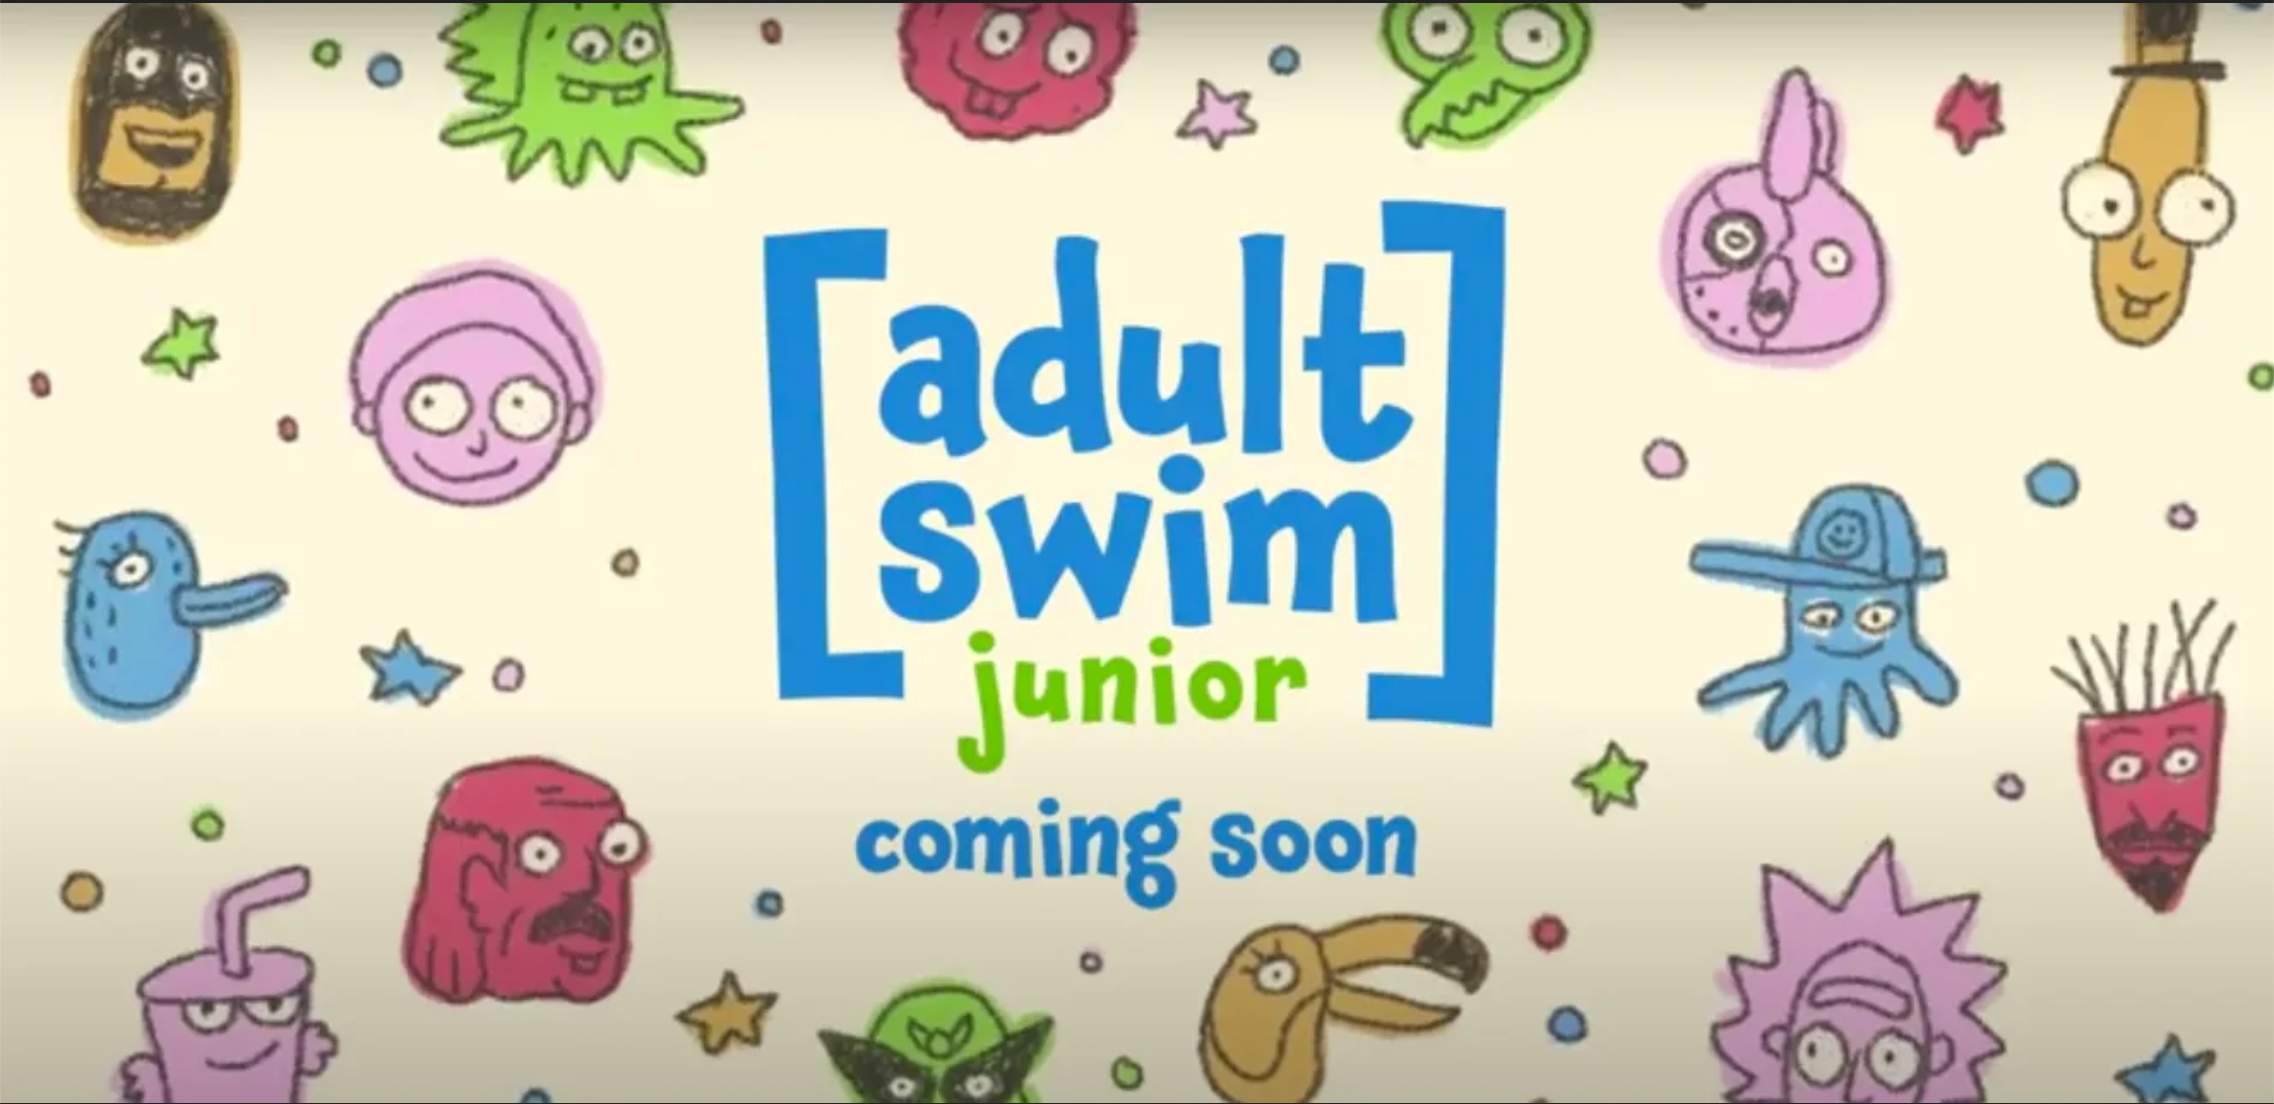 Adult Swim Jr